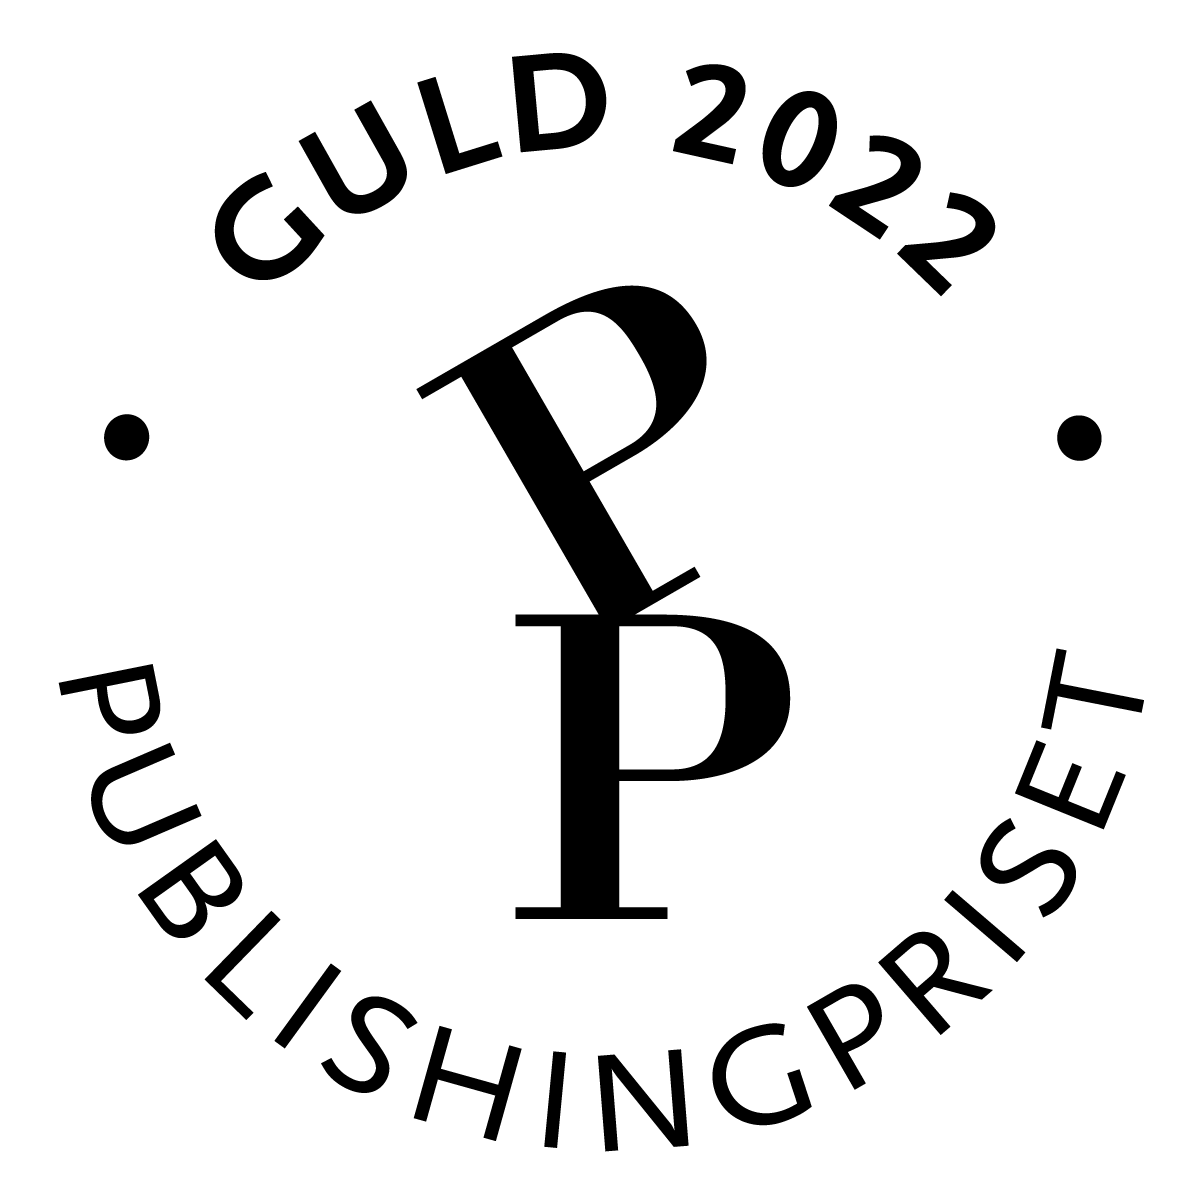 المنافسة في جائزة النشر لعام 2022